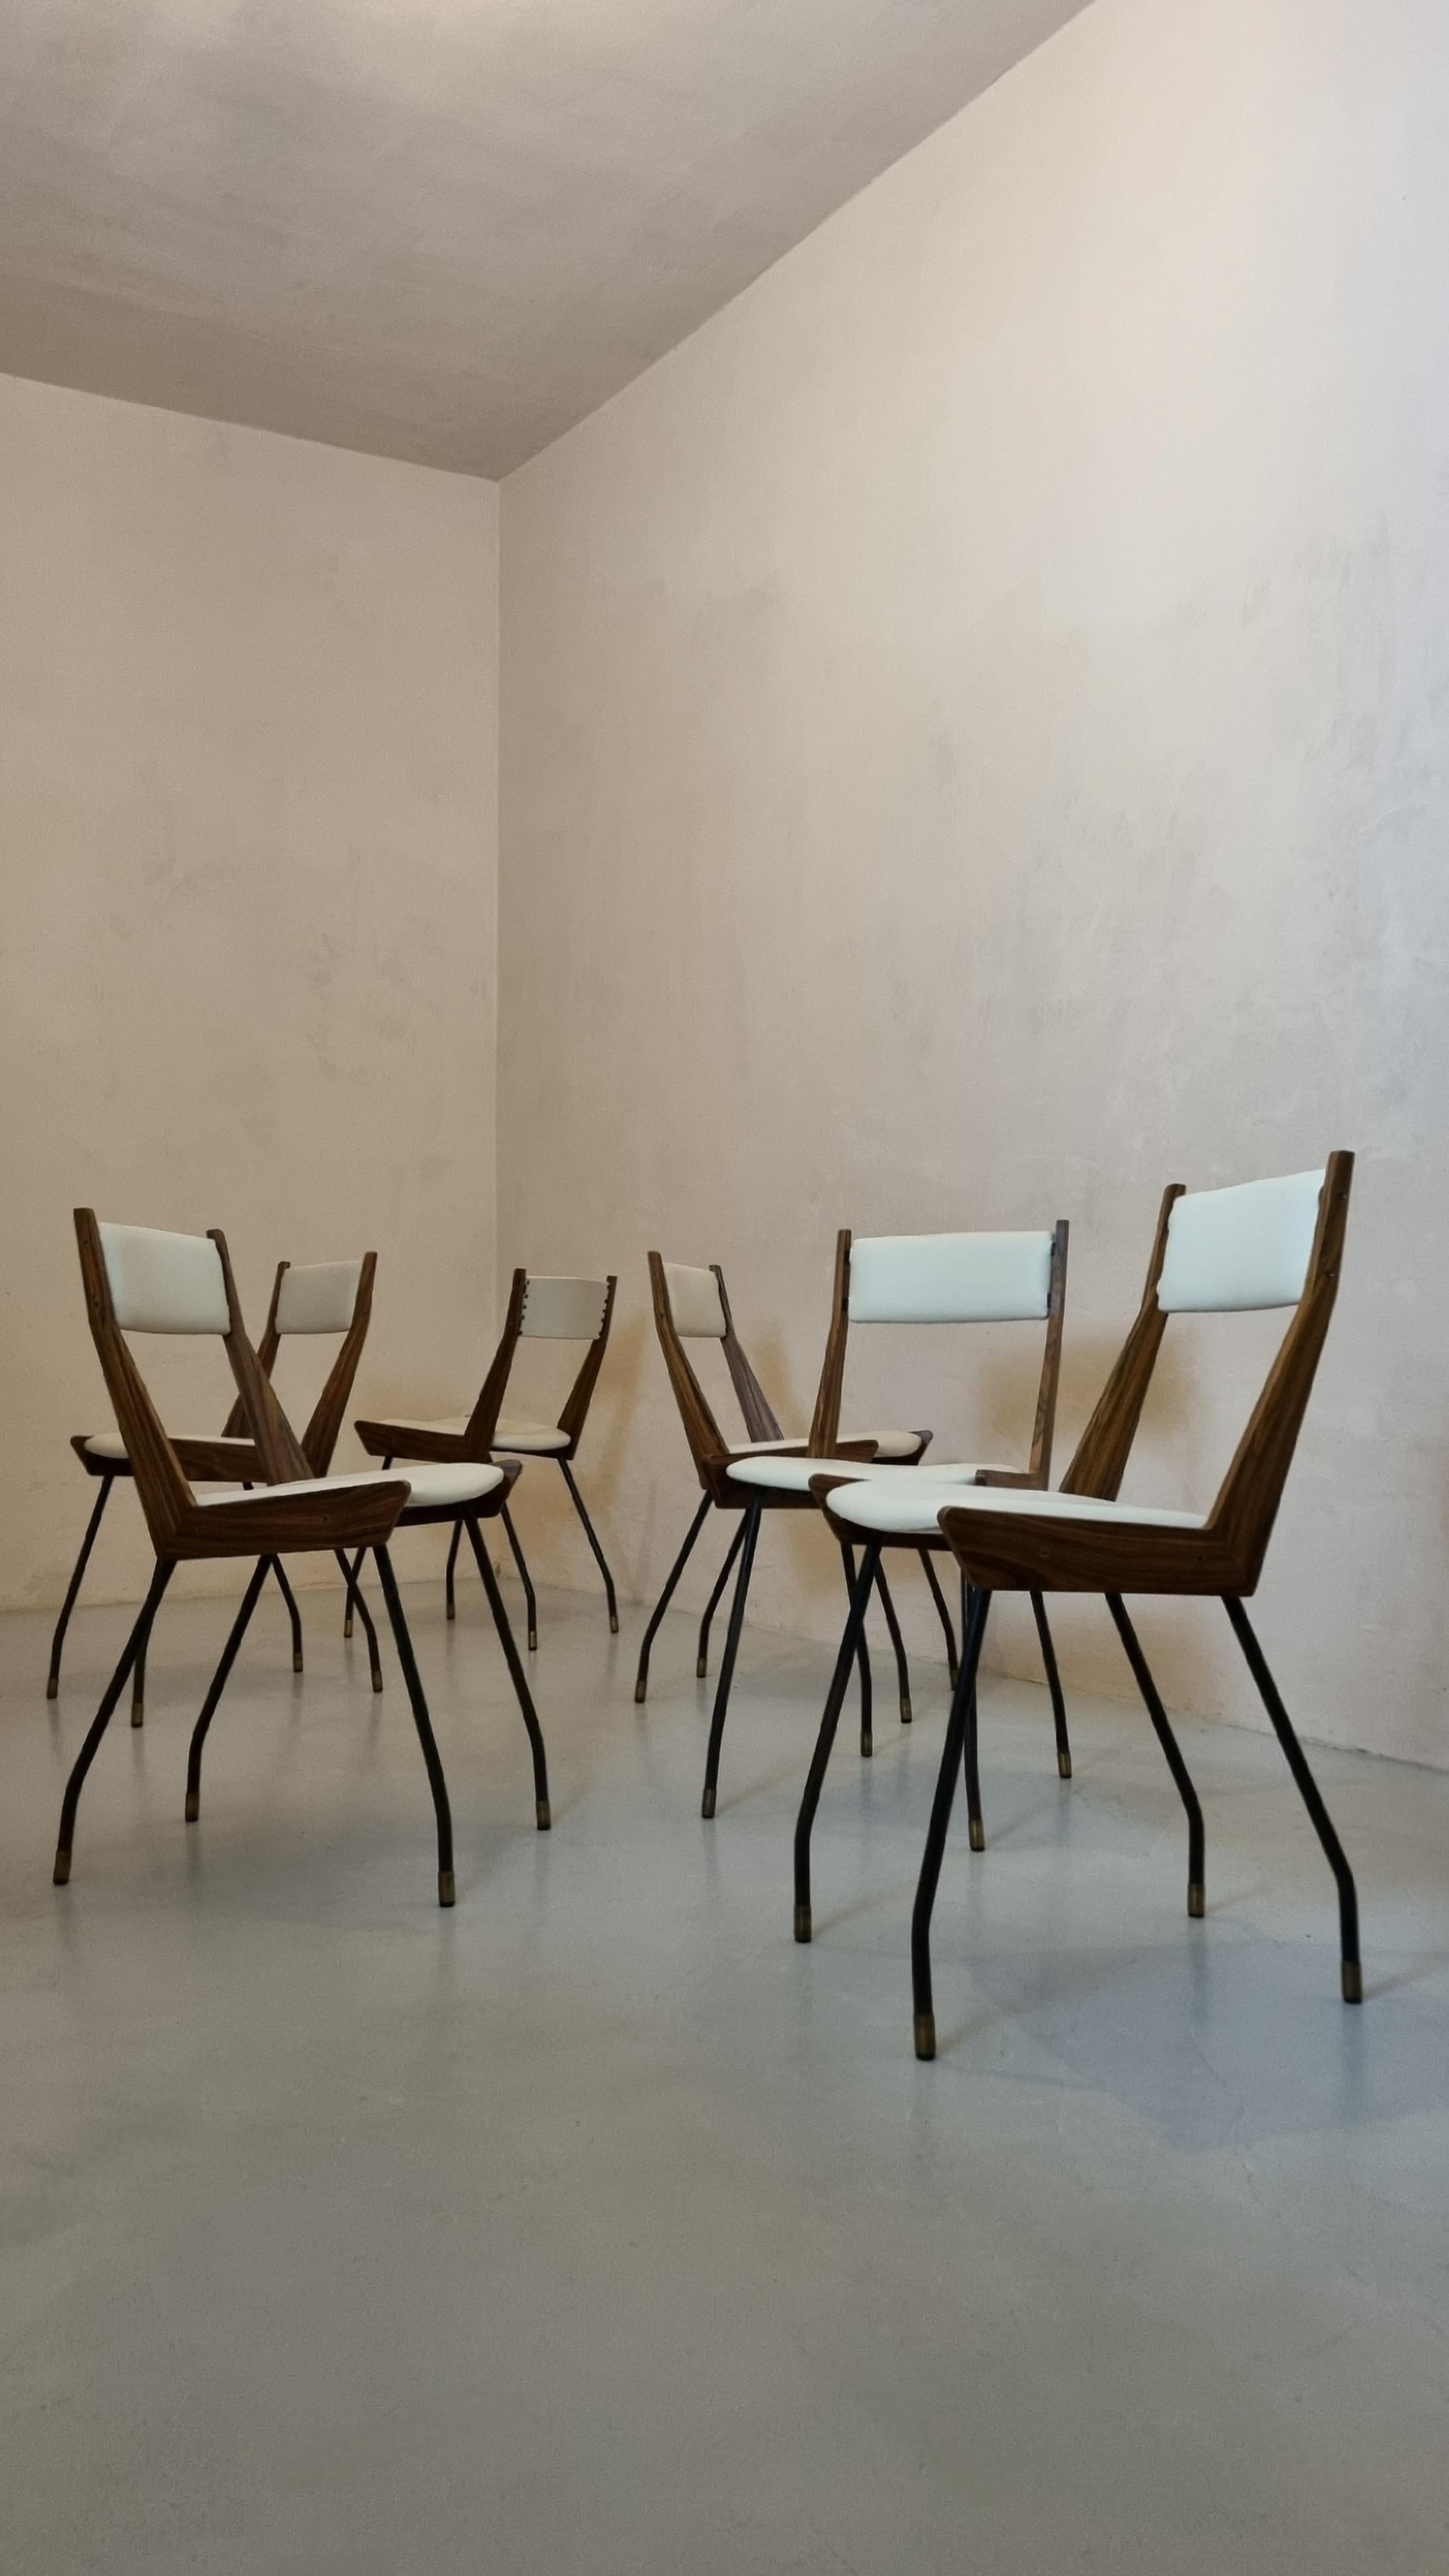 Satz von 6 Stühlen, entworfen von Carlo Ratti in den 1950er Jahren für Industria Legni Curvati.
Eisengestell, Messingfüße, furniertes Holz, Ledersitze. 
Die Stühle wurden unter Berücksichtigung der Originaldetails restauriert, die Sitze sind mit